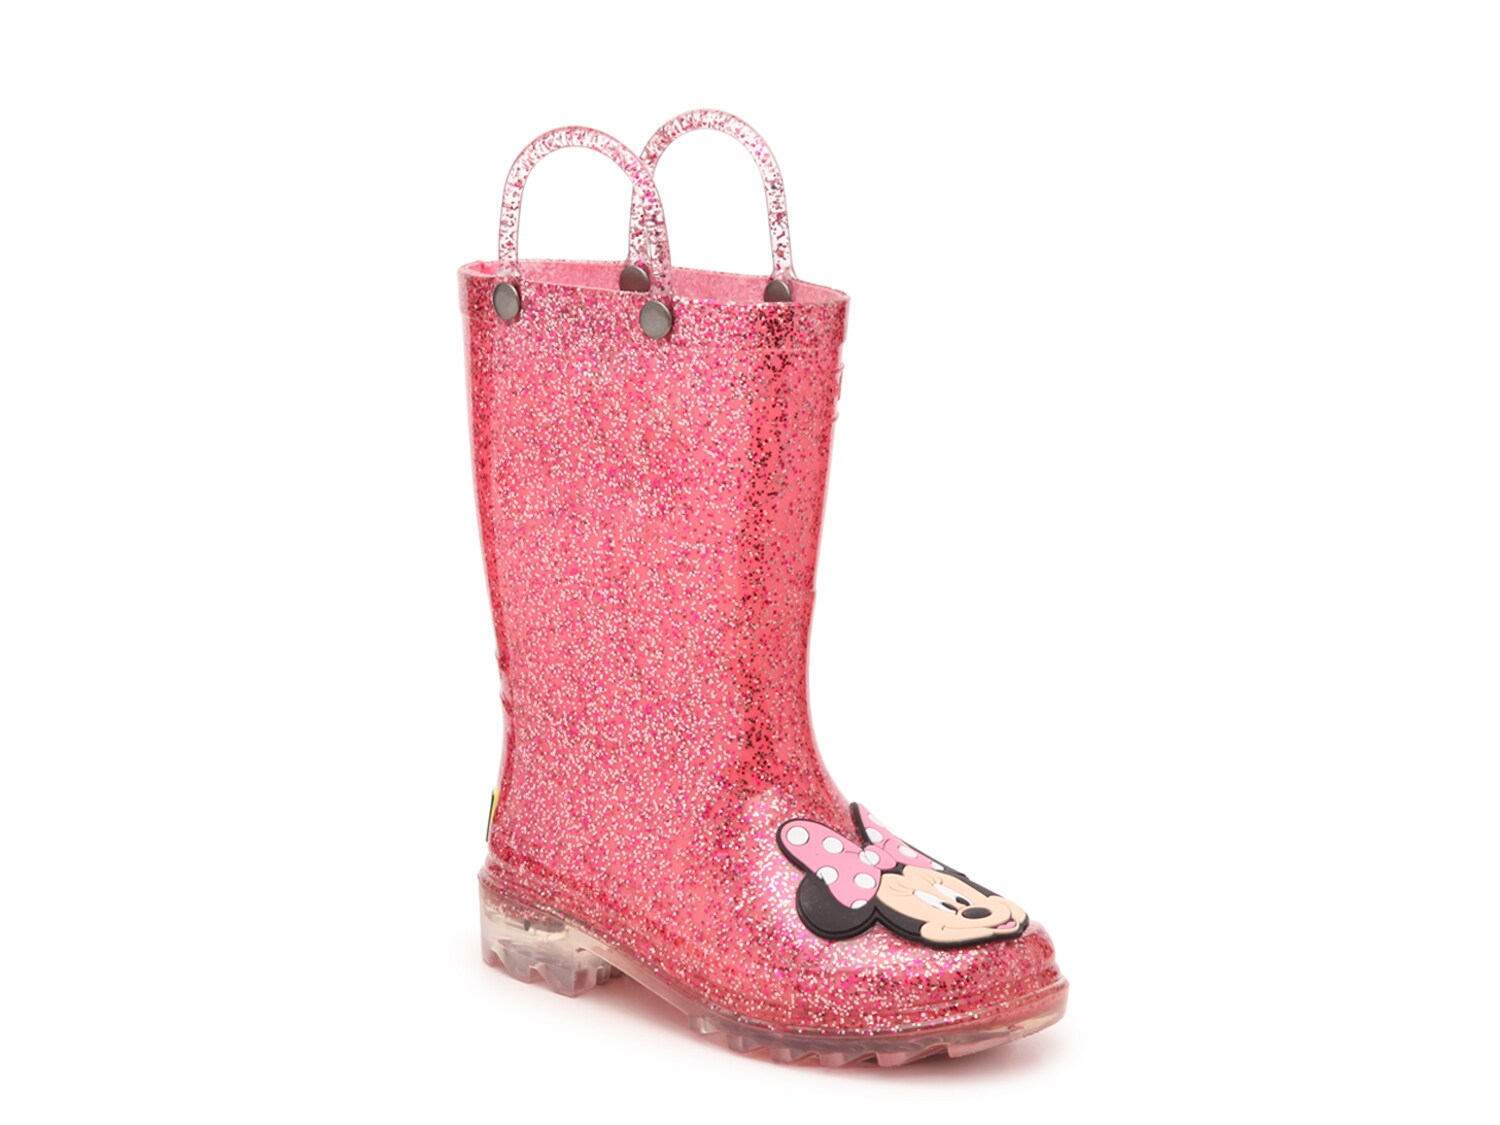 light pink rain boots